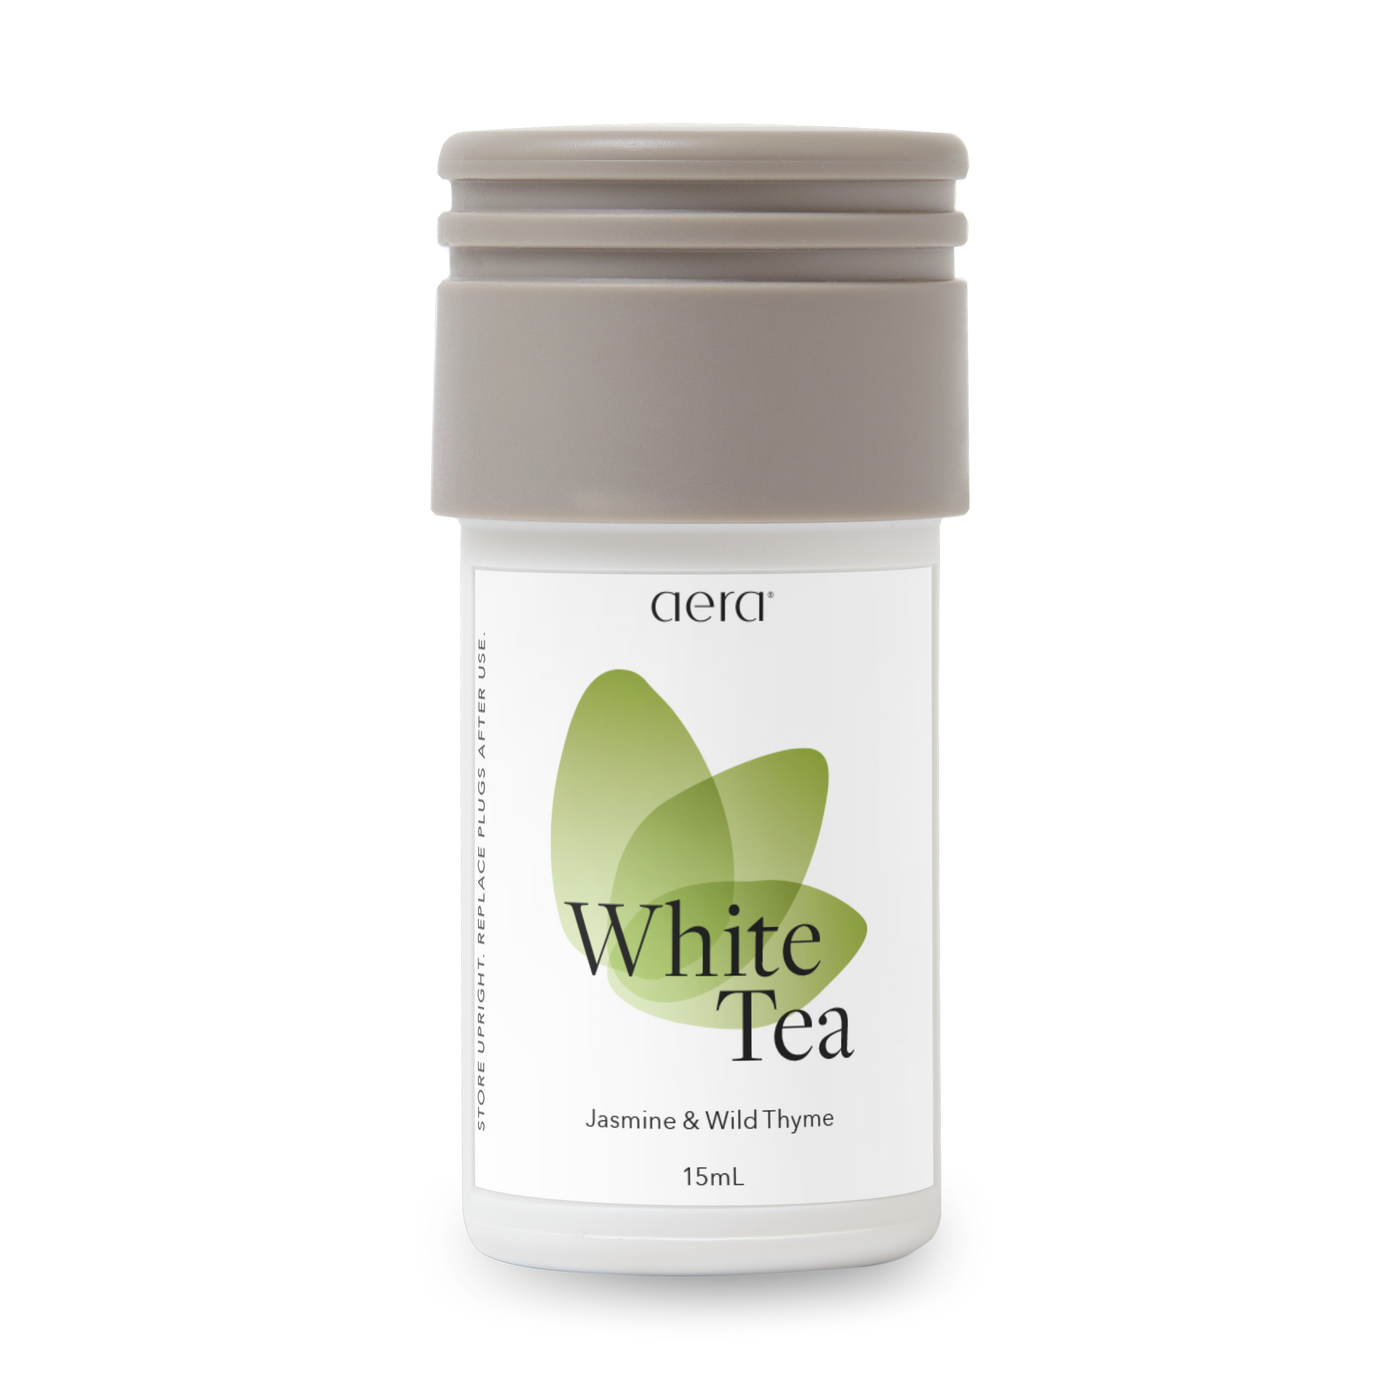 White Tea – AromaTech